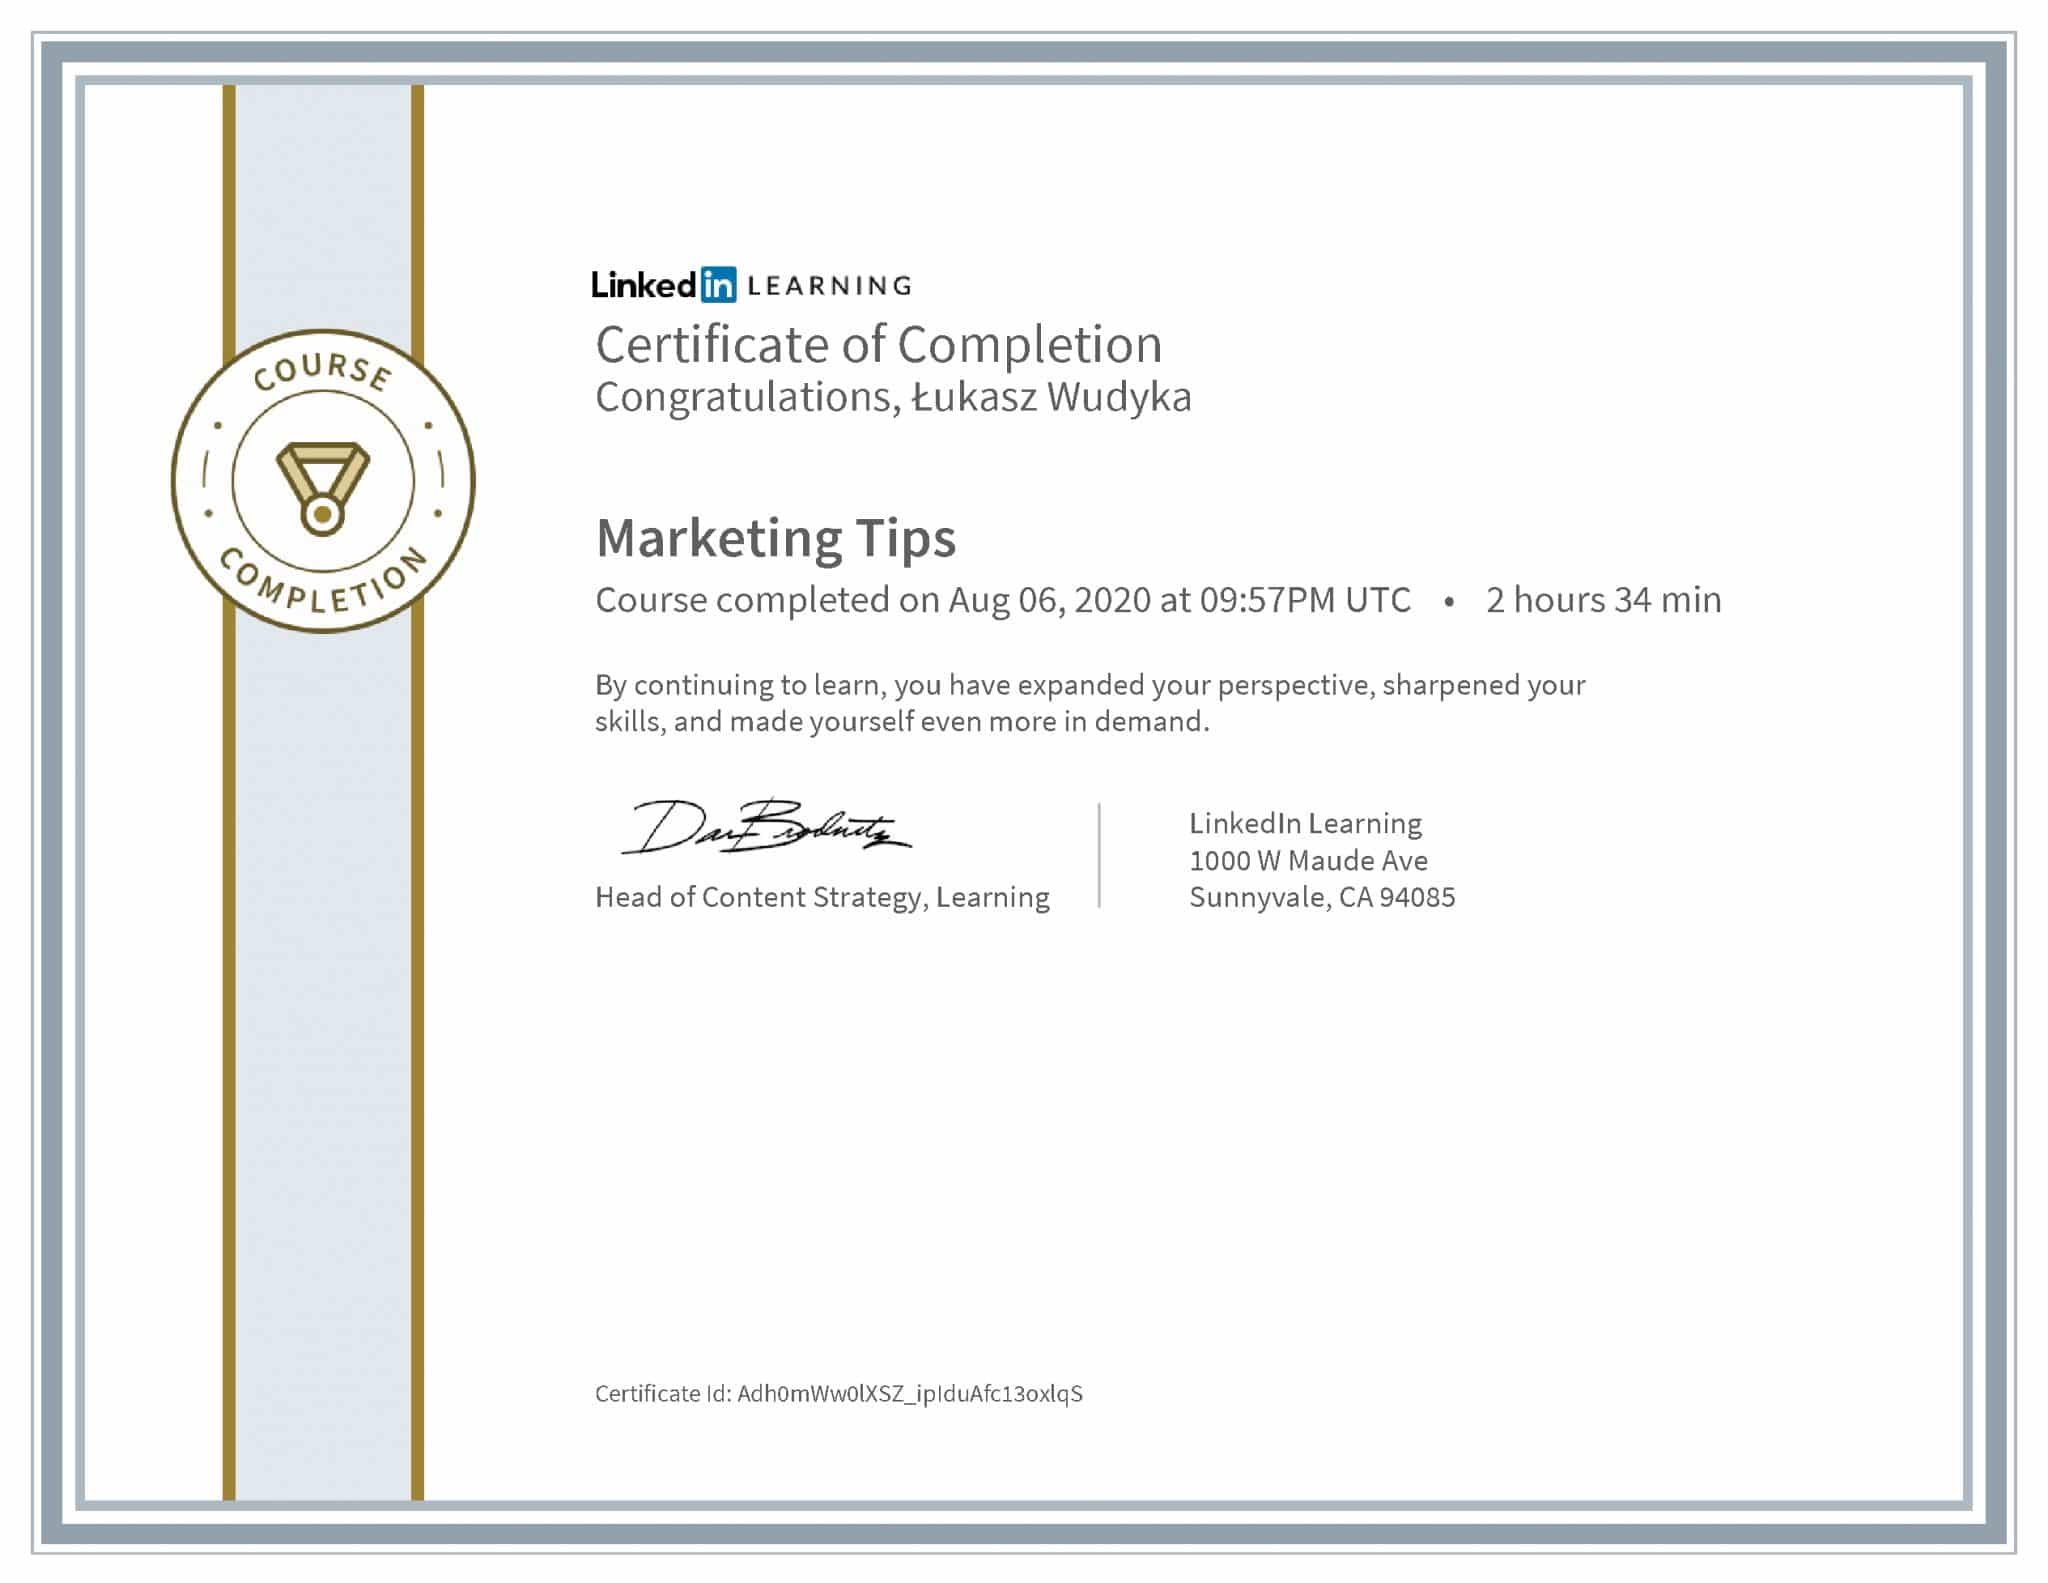 Łukasz Wudyka certyfikat LinkedIn Marketing Tips